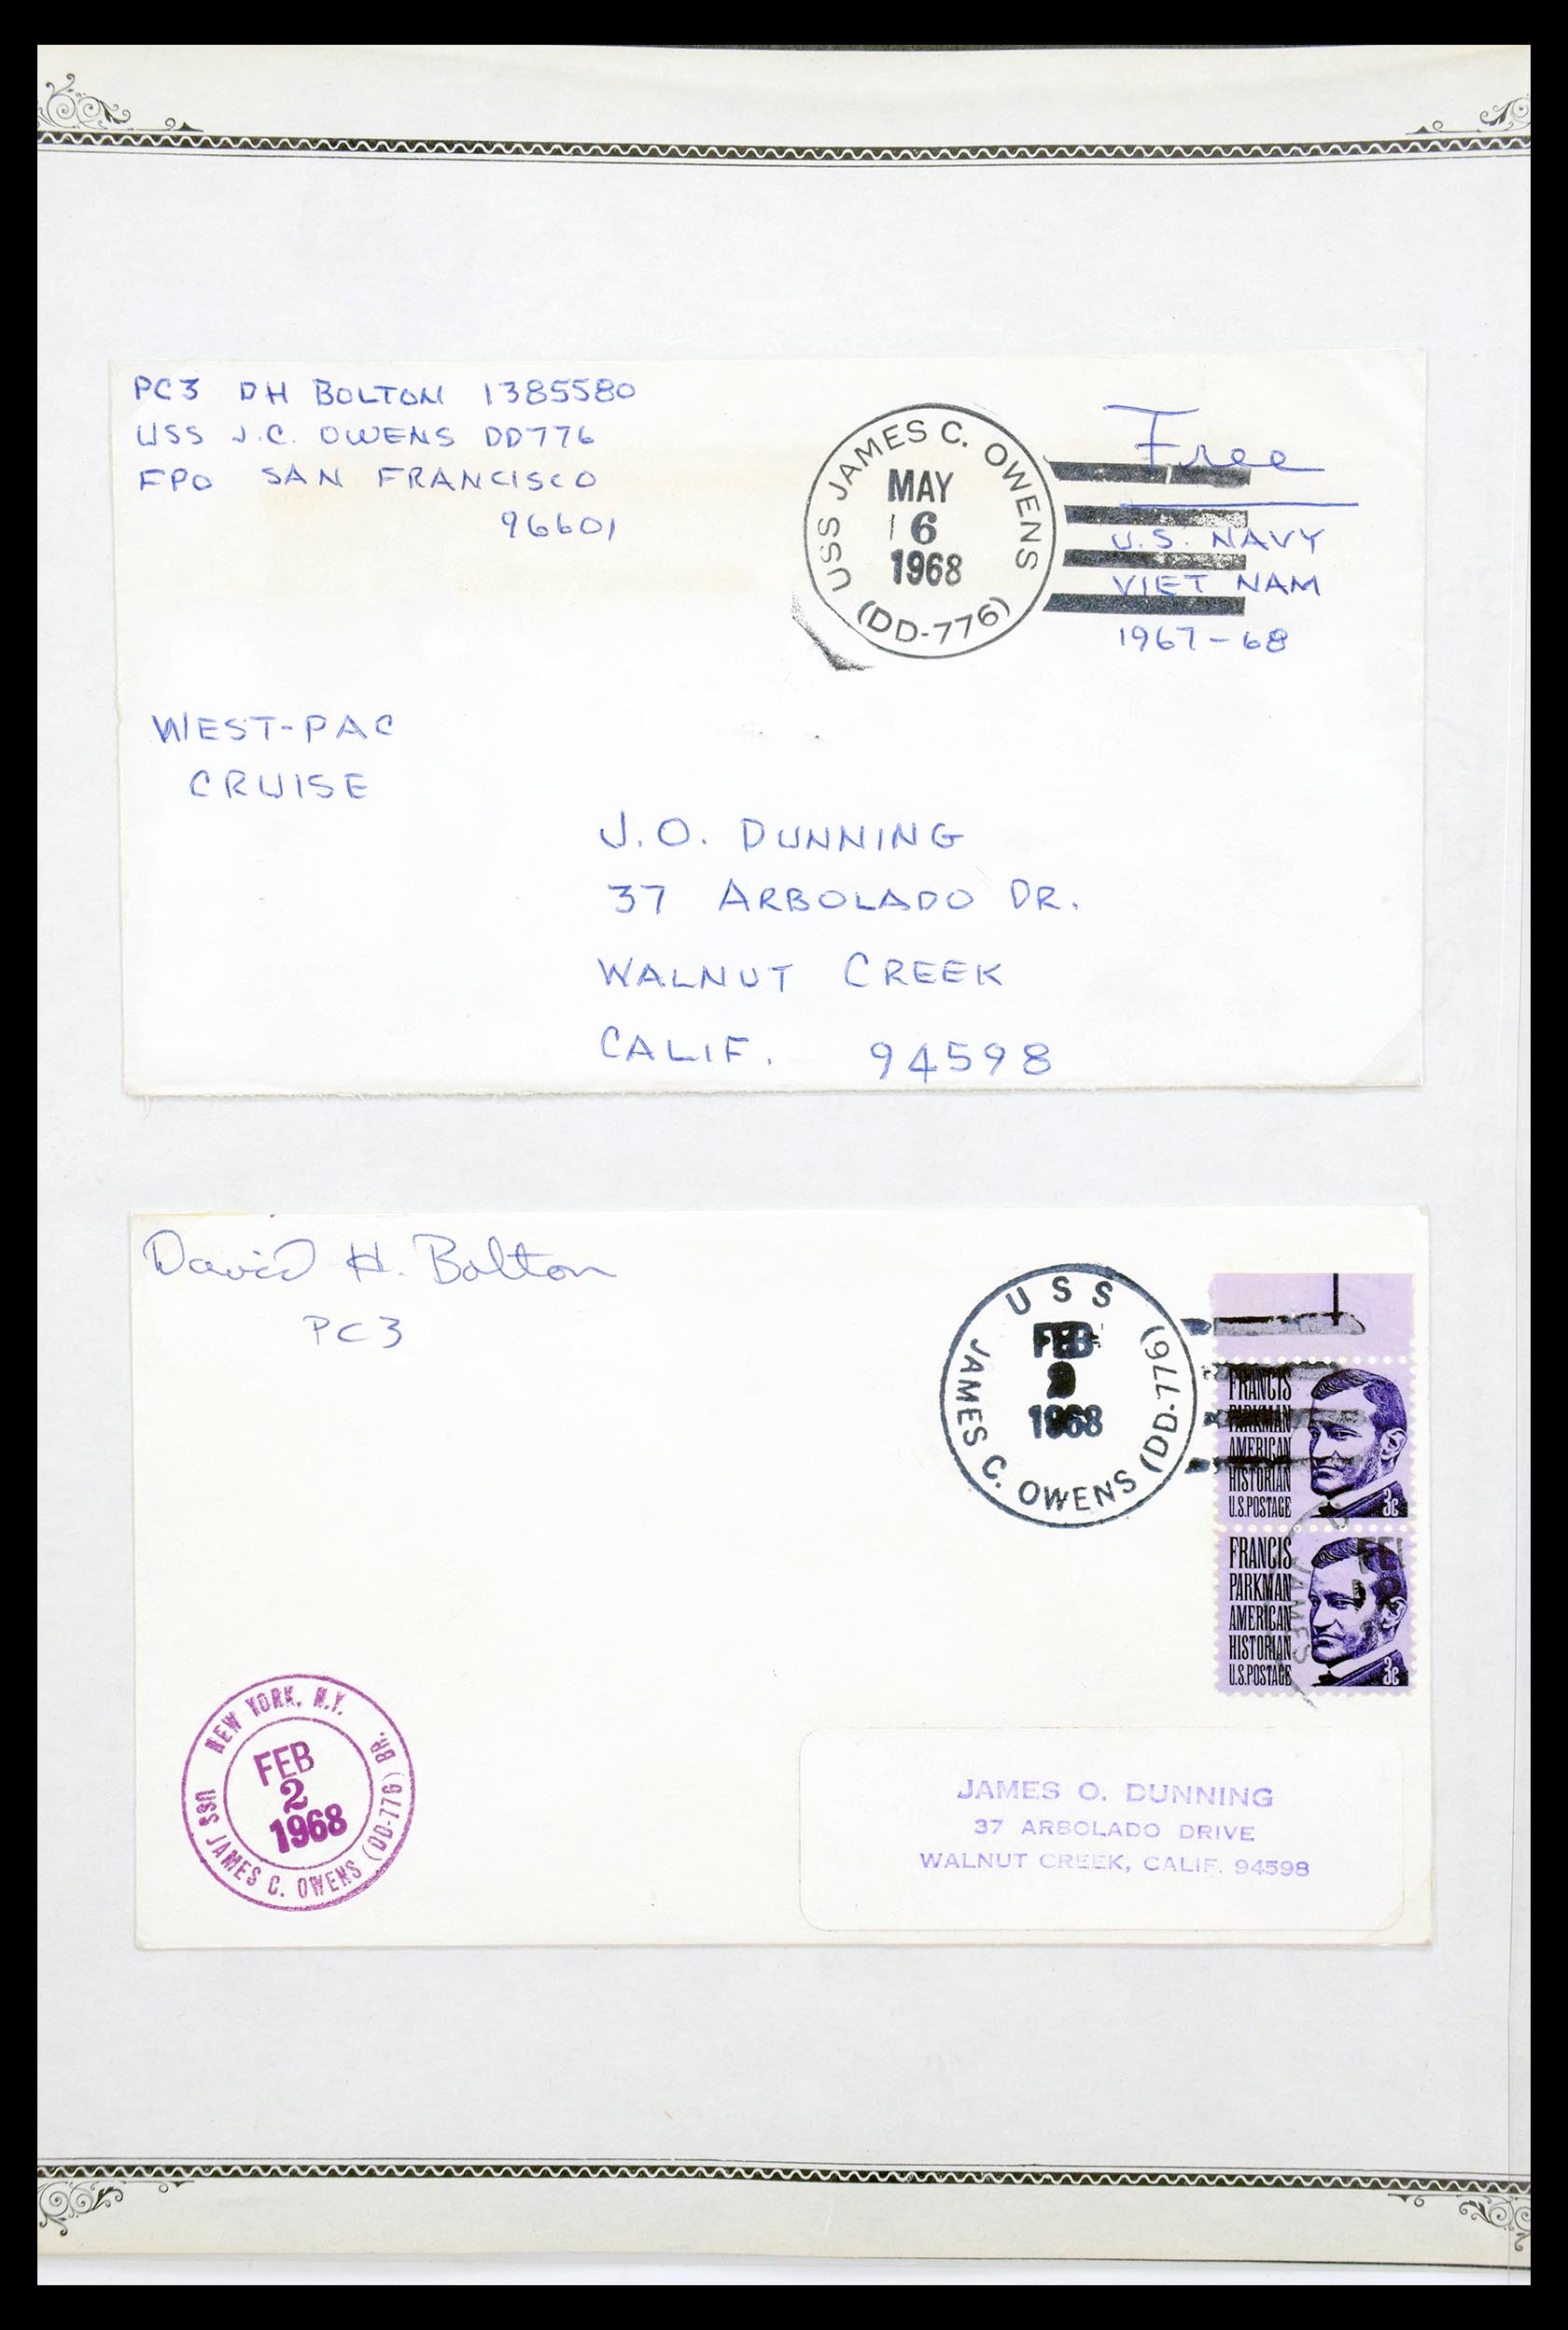 30341 040 - 30341 USA scheepspost brieven 1930-1970.